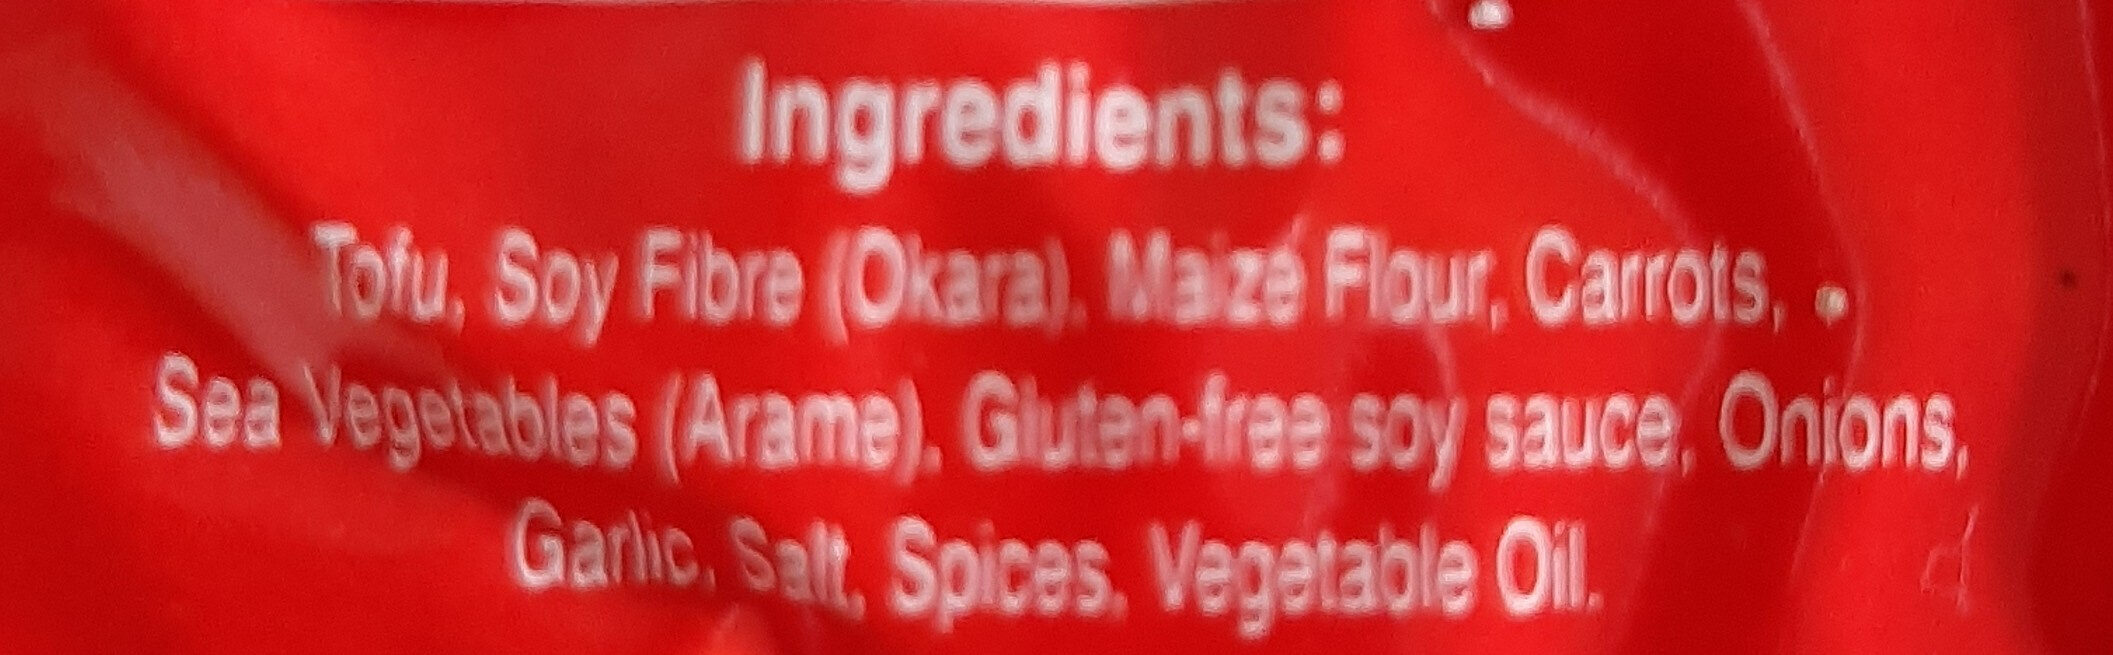 macrobiotic tofu burgers - Ingredients